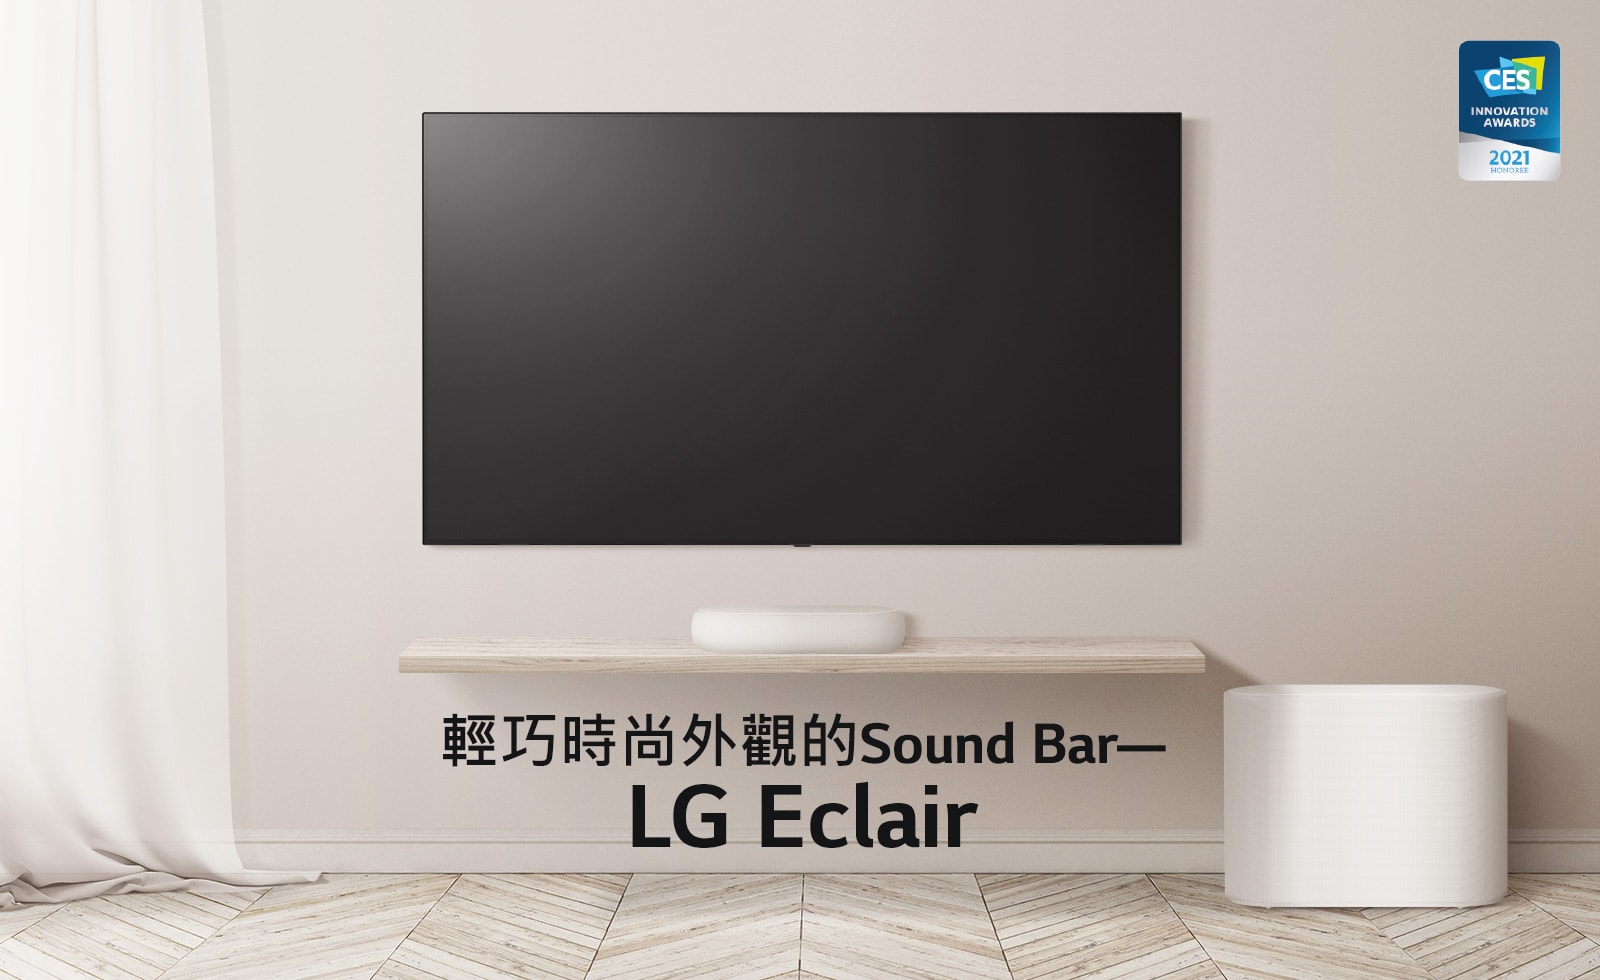 黑色螢幕上寫著「新世代」的字樣。字樣消失，出現一個Sound Bar和一台電視放在木地板上，左邊的窗簾飄逸著。CES 創新獎標誌放在右邊角落。